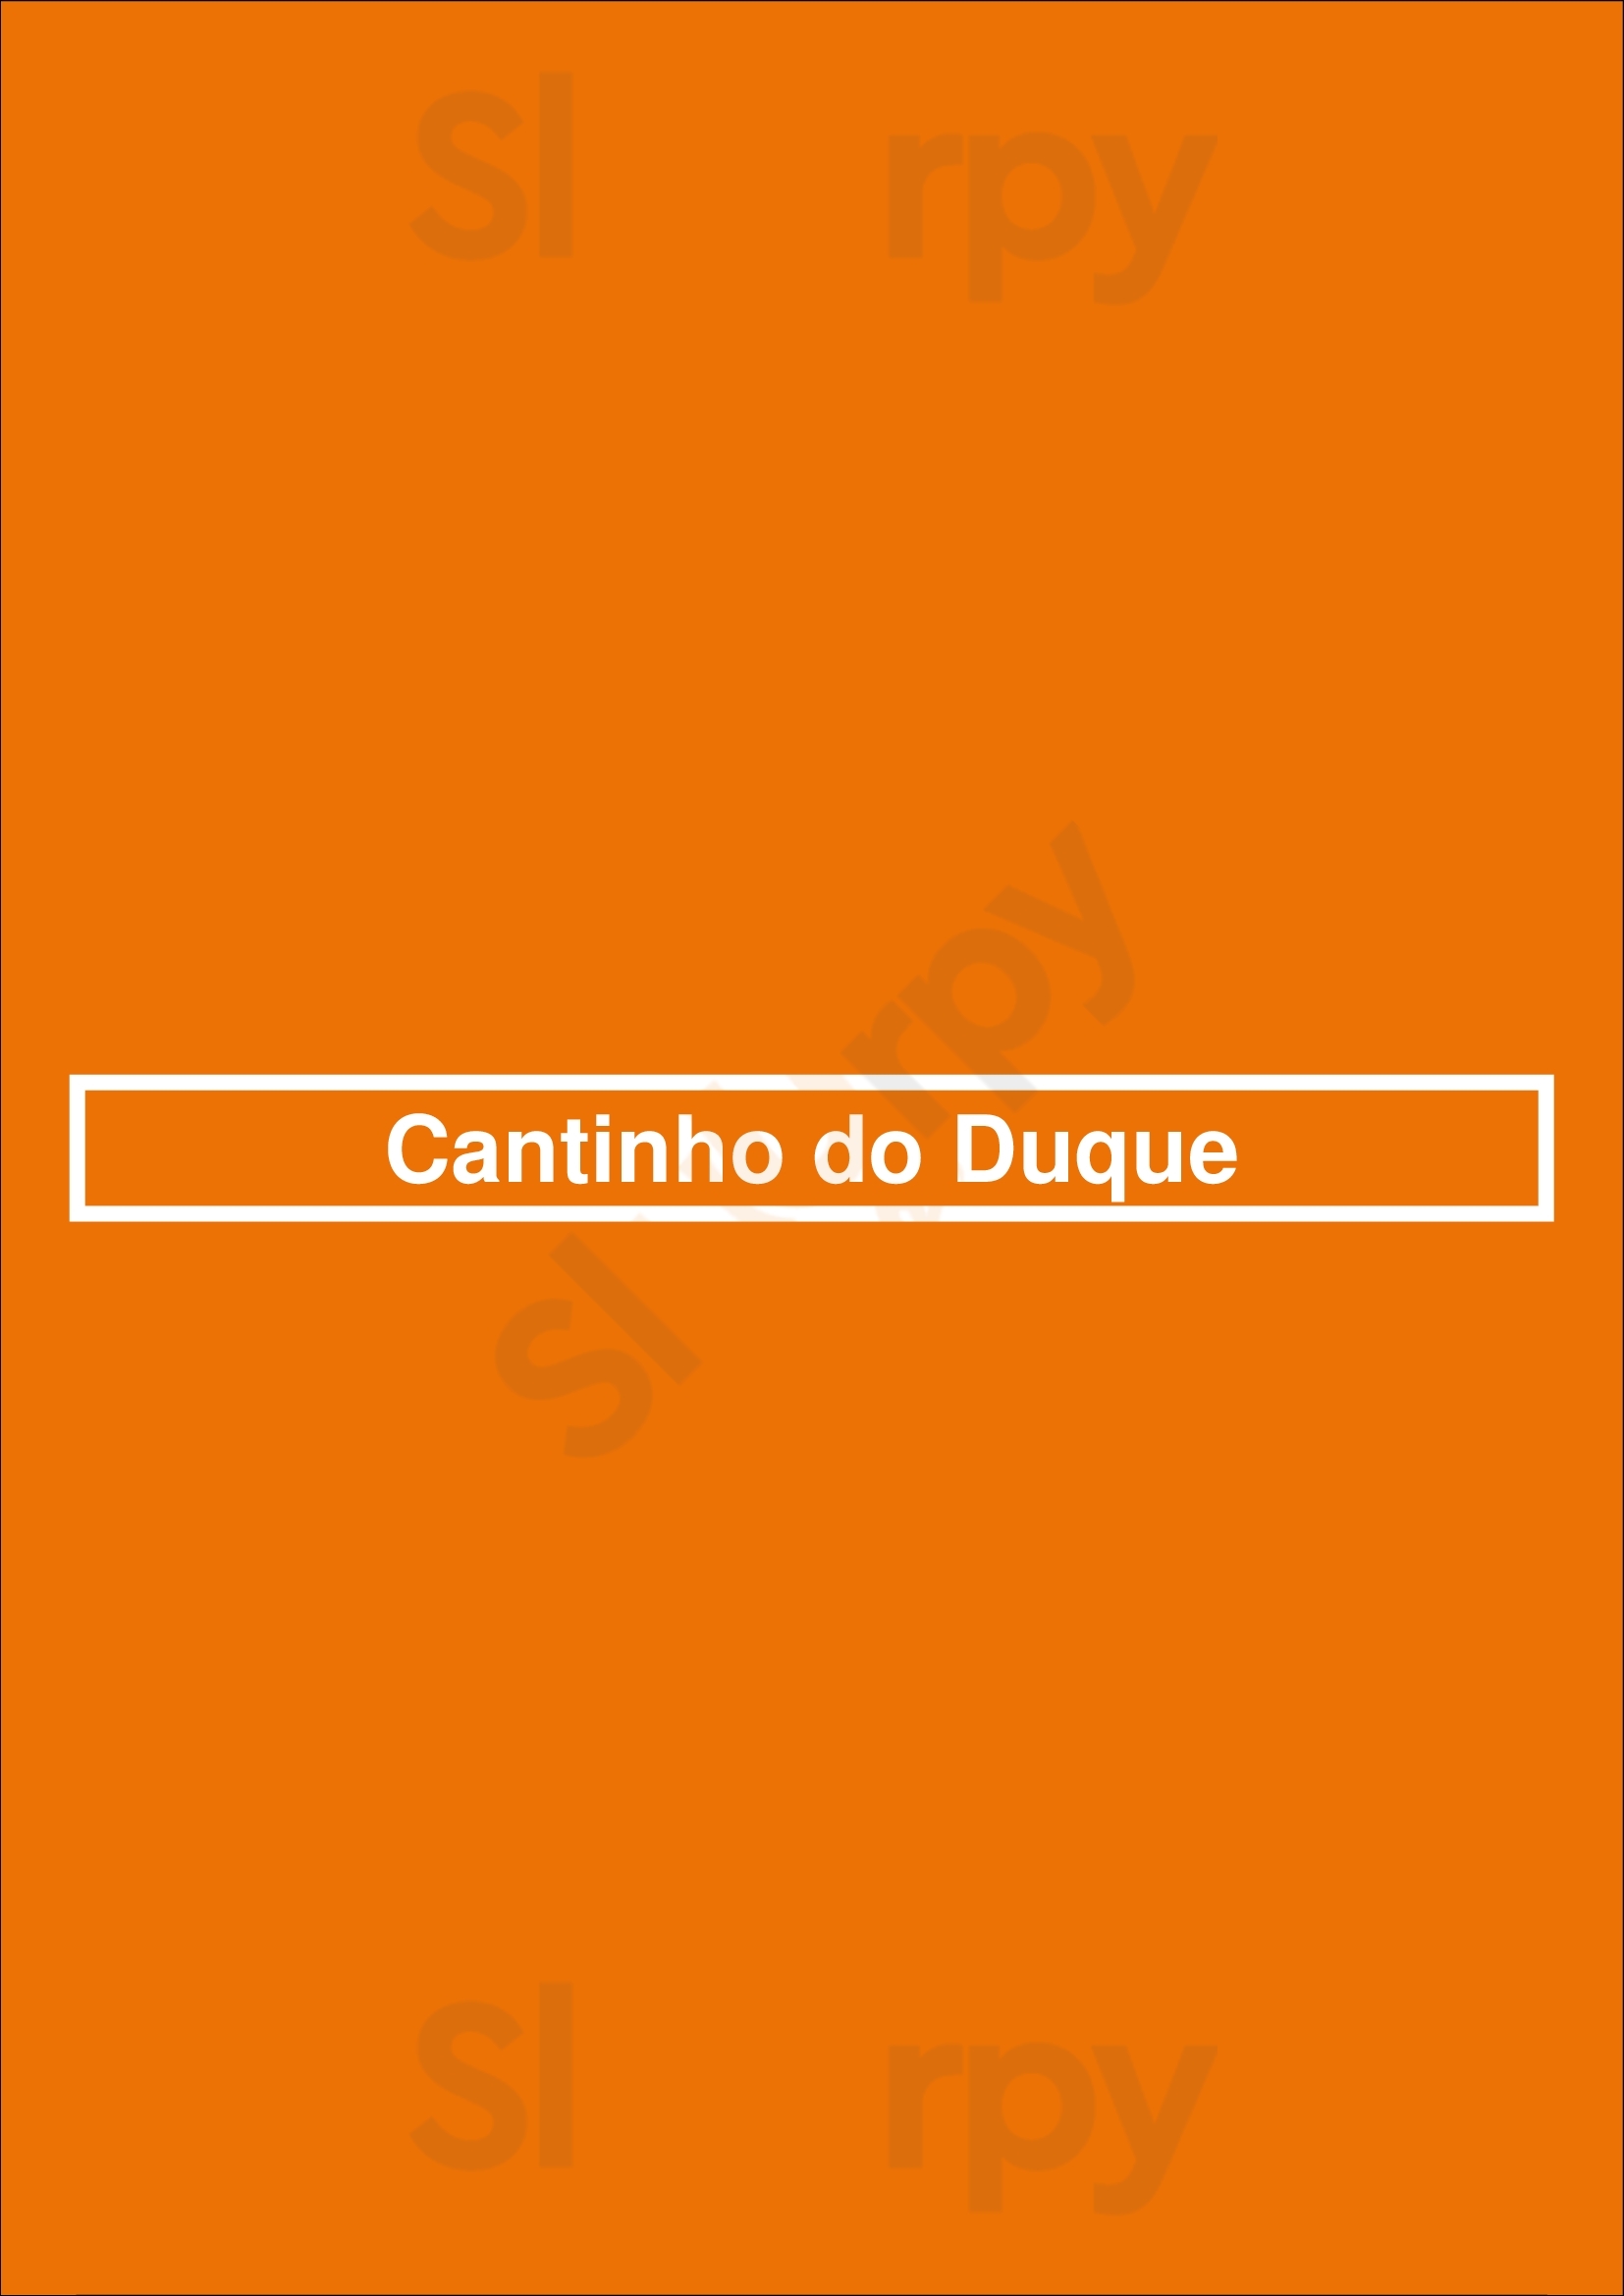 Cantinho Do Duque Lisboa Menu - 1